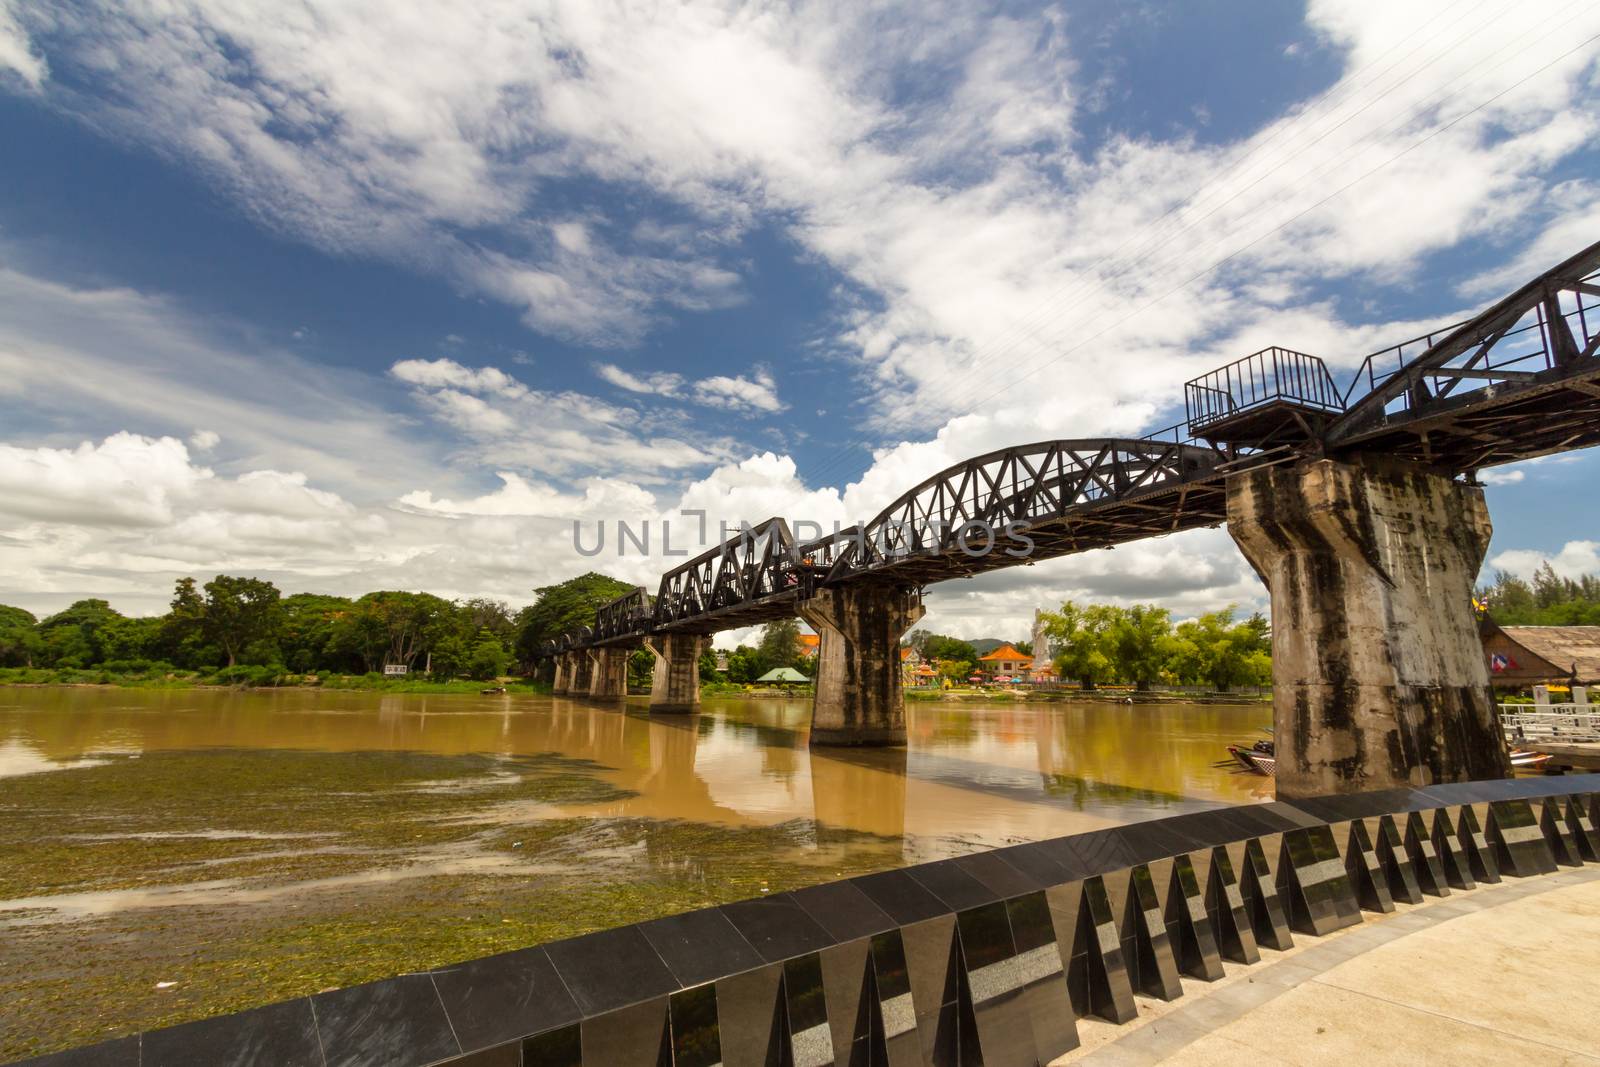 River Kwai Bridge, Kanchanaburi, Thailand.